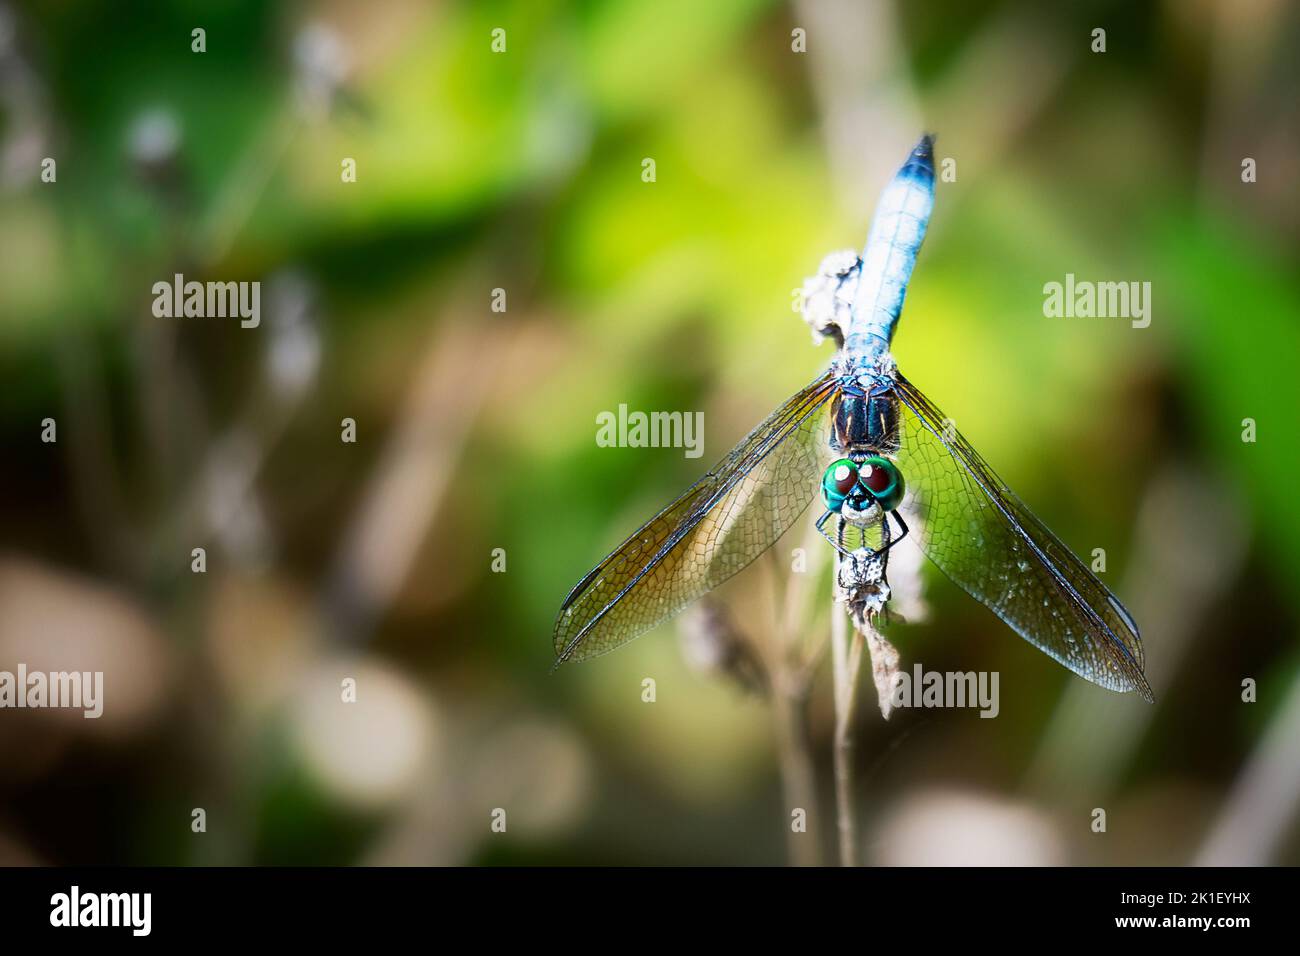 Une libellule dasher bleu mâle repose légèrement sur une branche. Banque D'Images